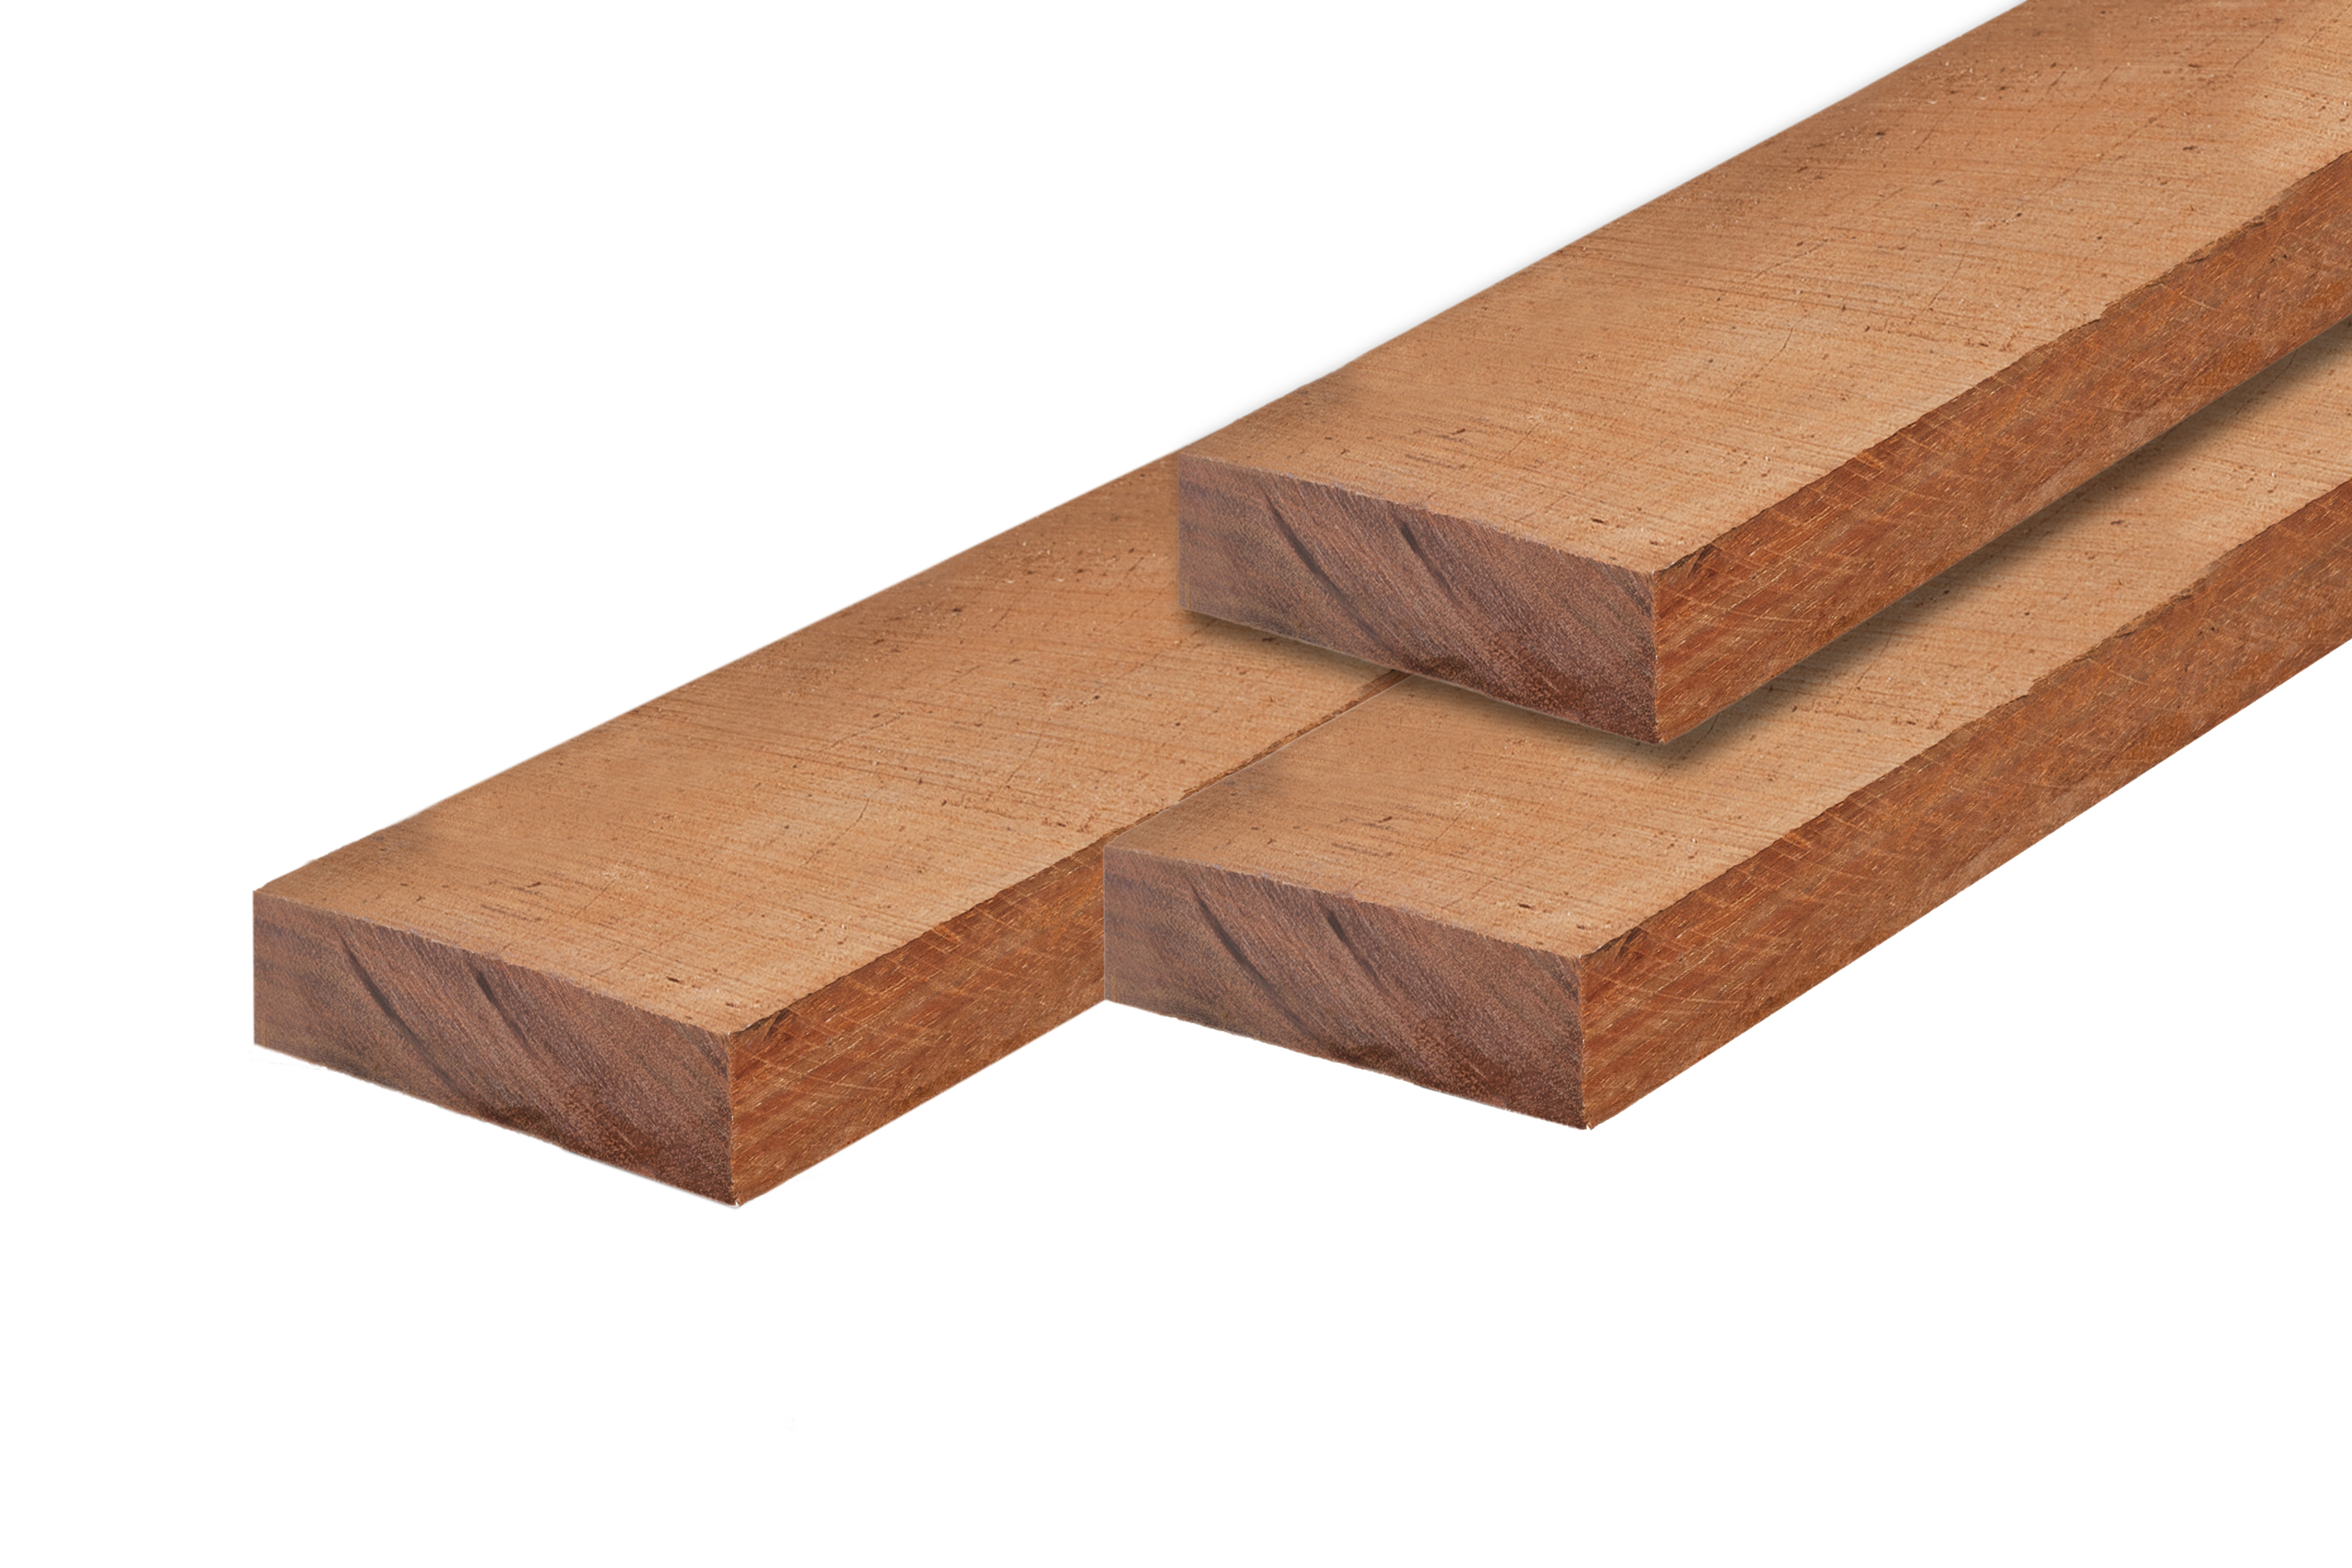 Girder hardwood 5.0x15.0x250cm